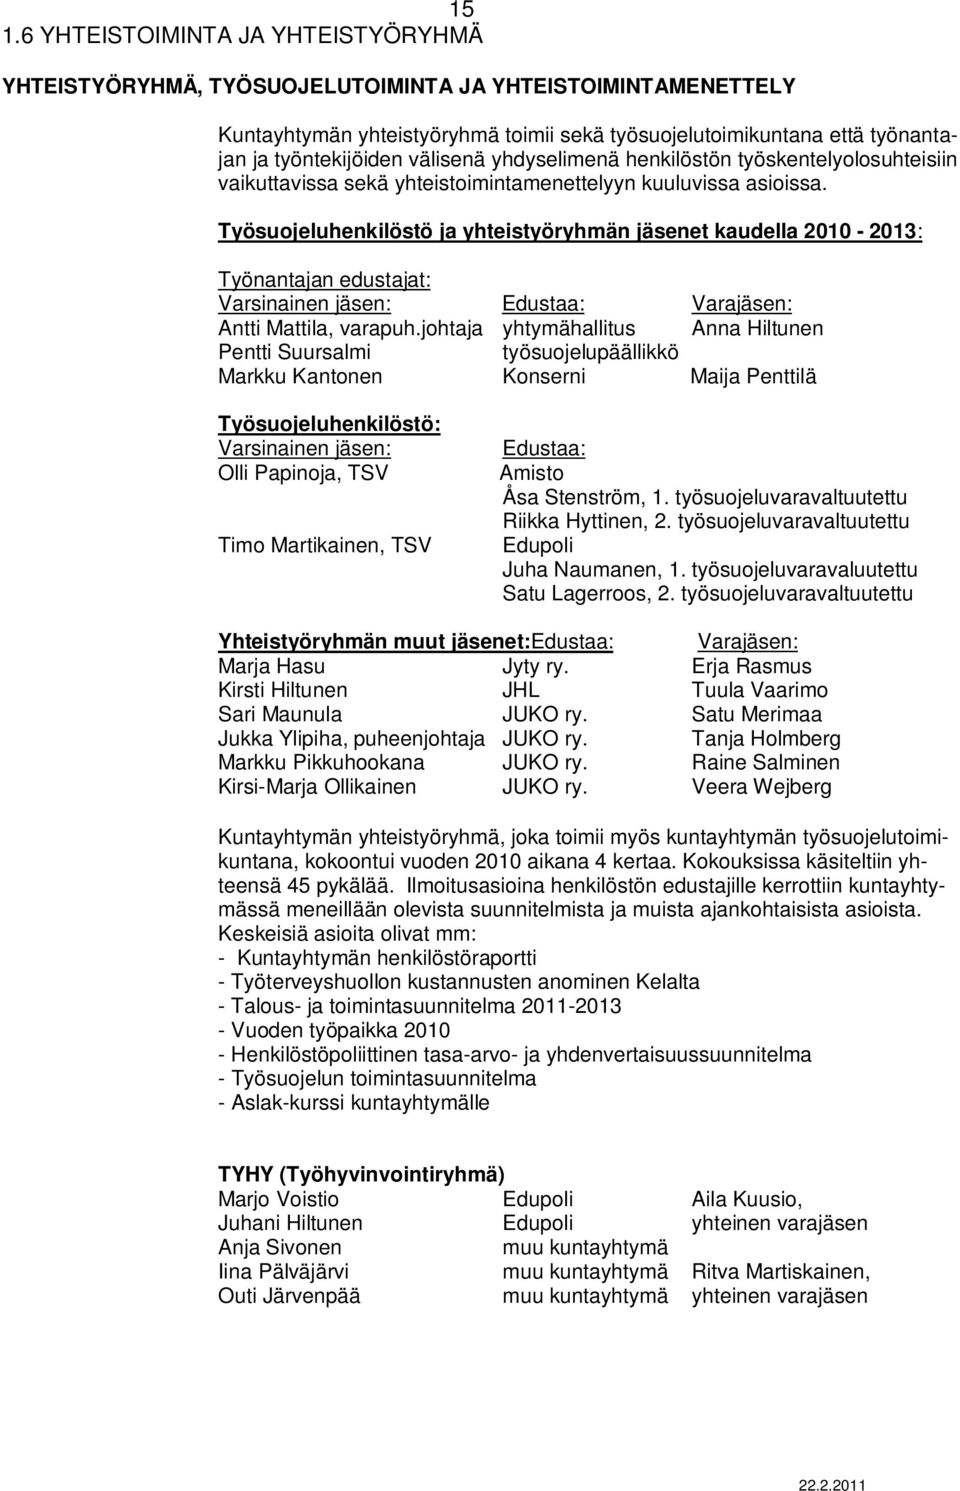 Työsuojeluhenkilöstö ja yhteistyöryhmän jäsenet kaudella 2010-2013: Työnantajan edustajat: Varsinainen jäsen: Edustaa: Varajäsen: Antti Mattila, varapuh.